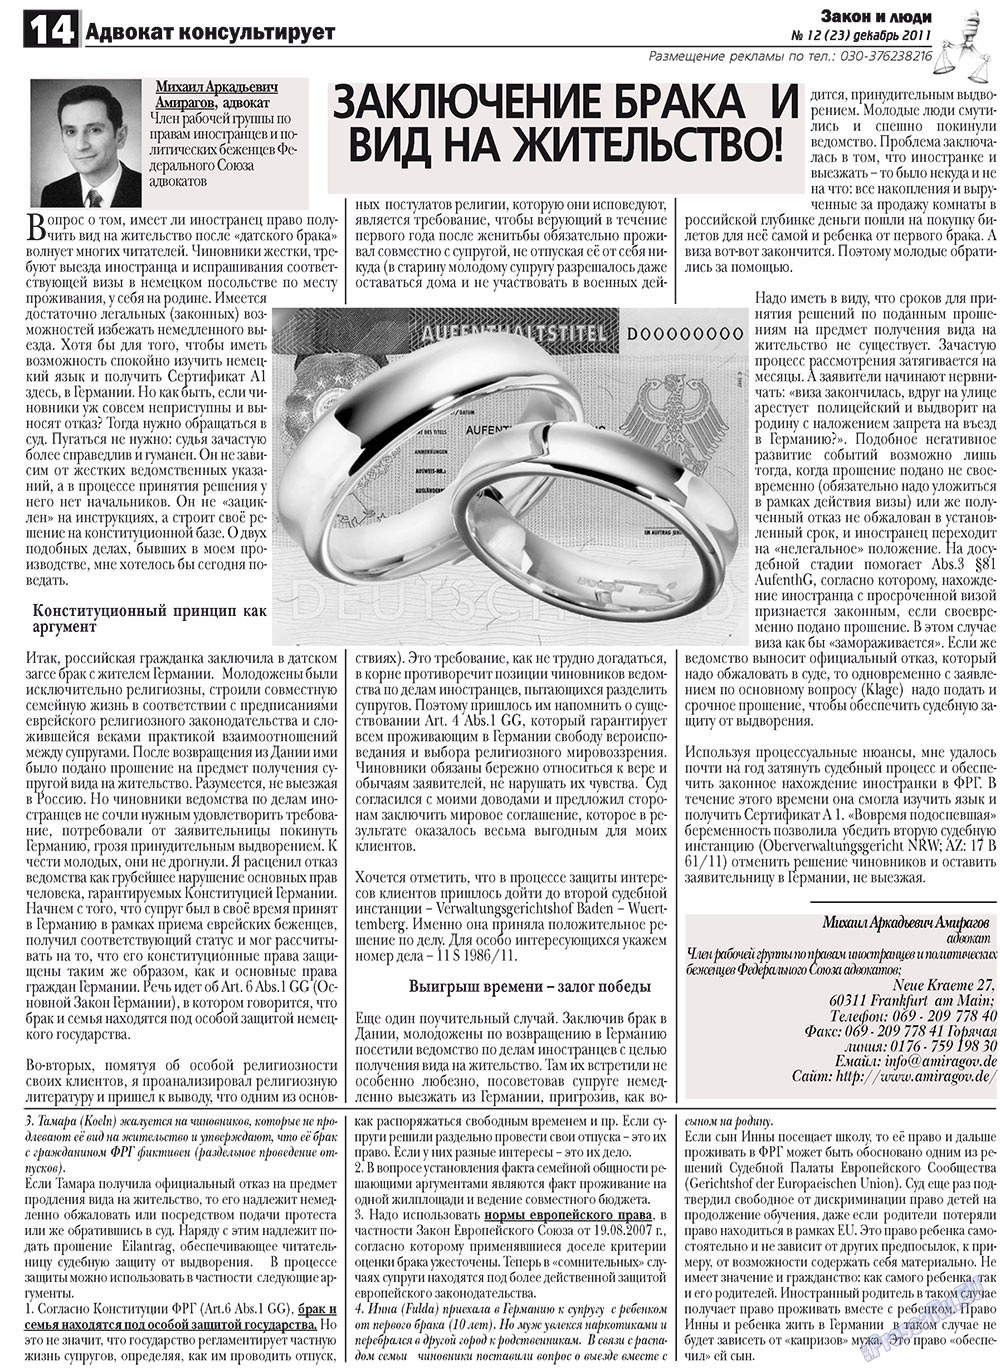 Закон и люди (газета). 2011 год, номер 12, стр. 14